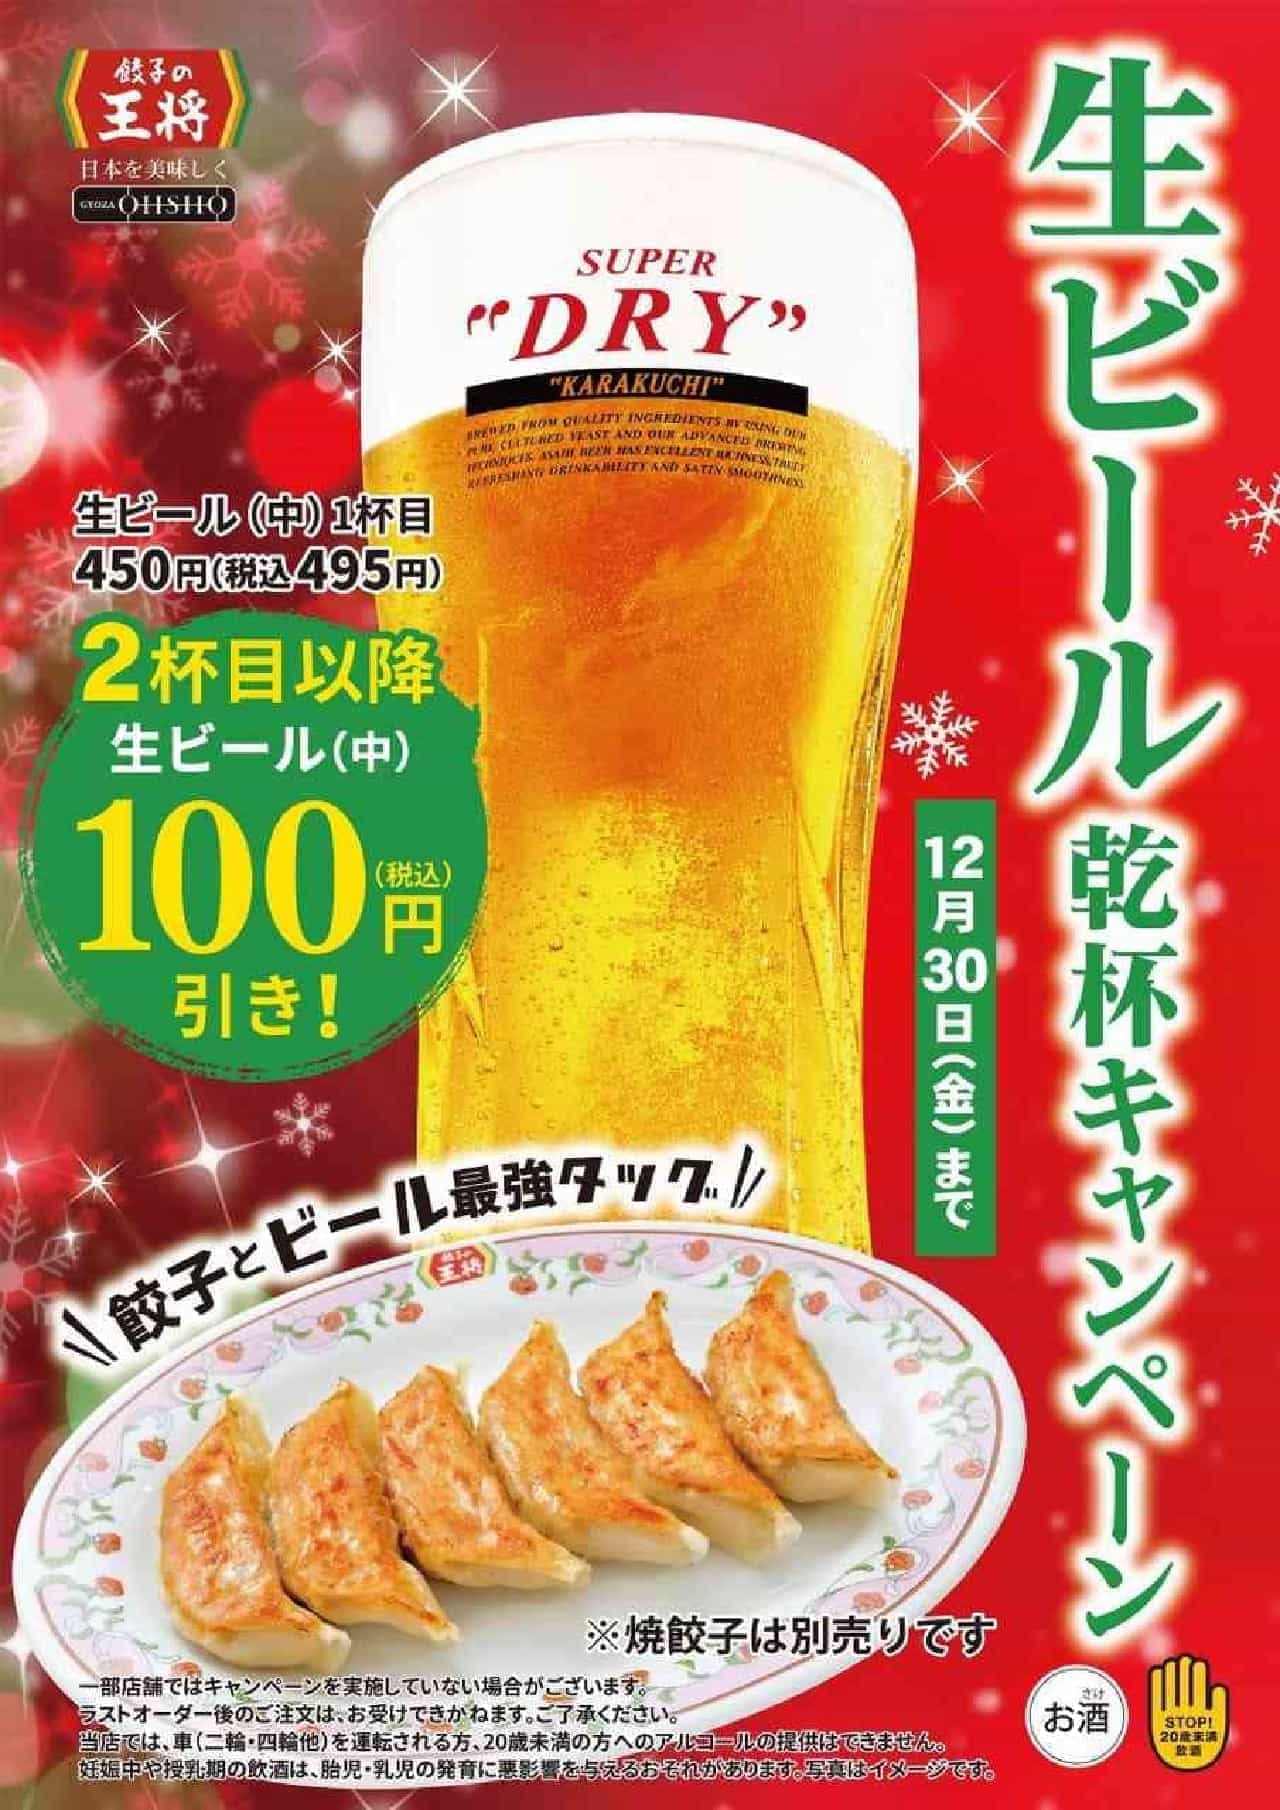 餃子の王将「生ビール乾杯キャンペーン」